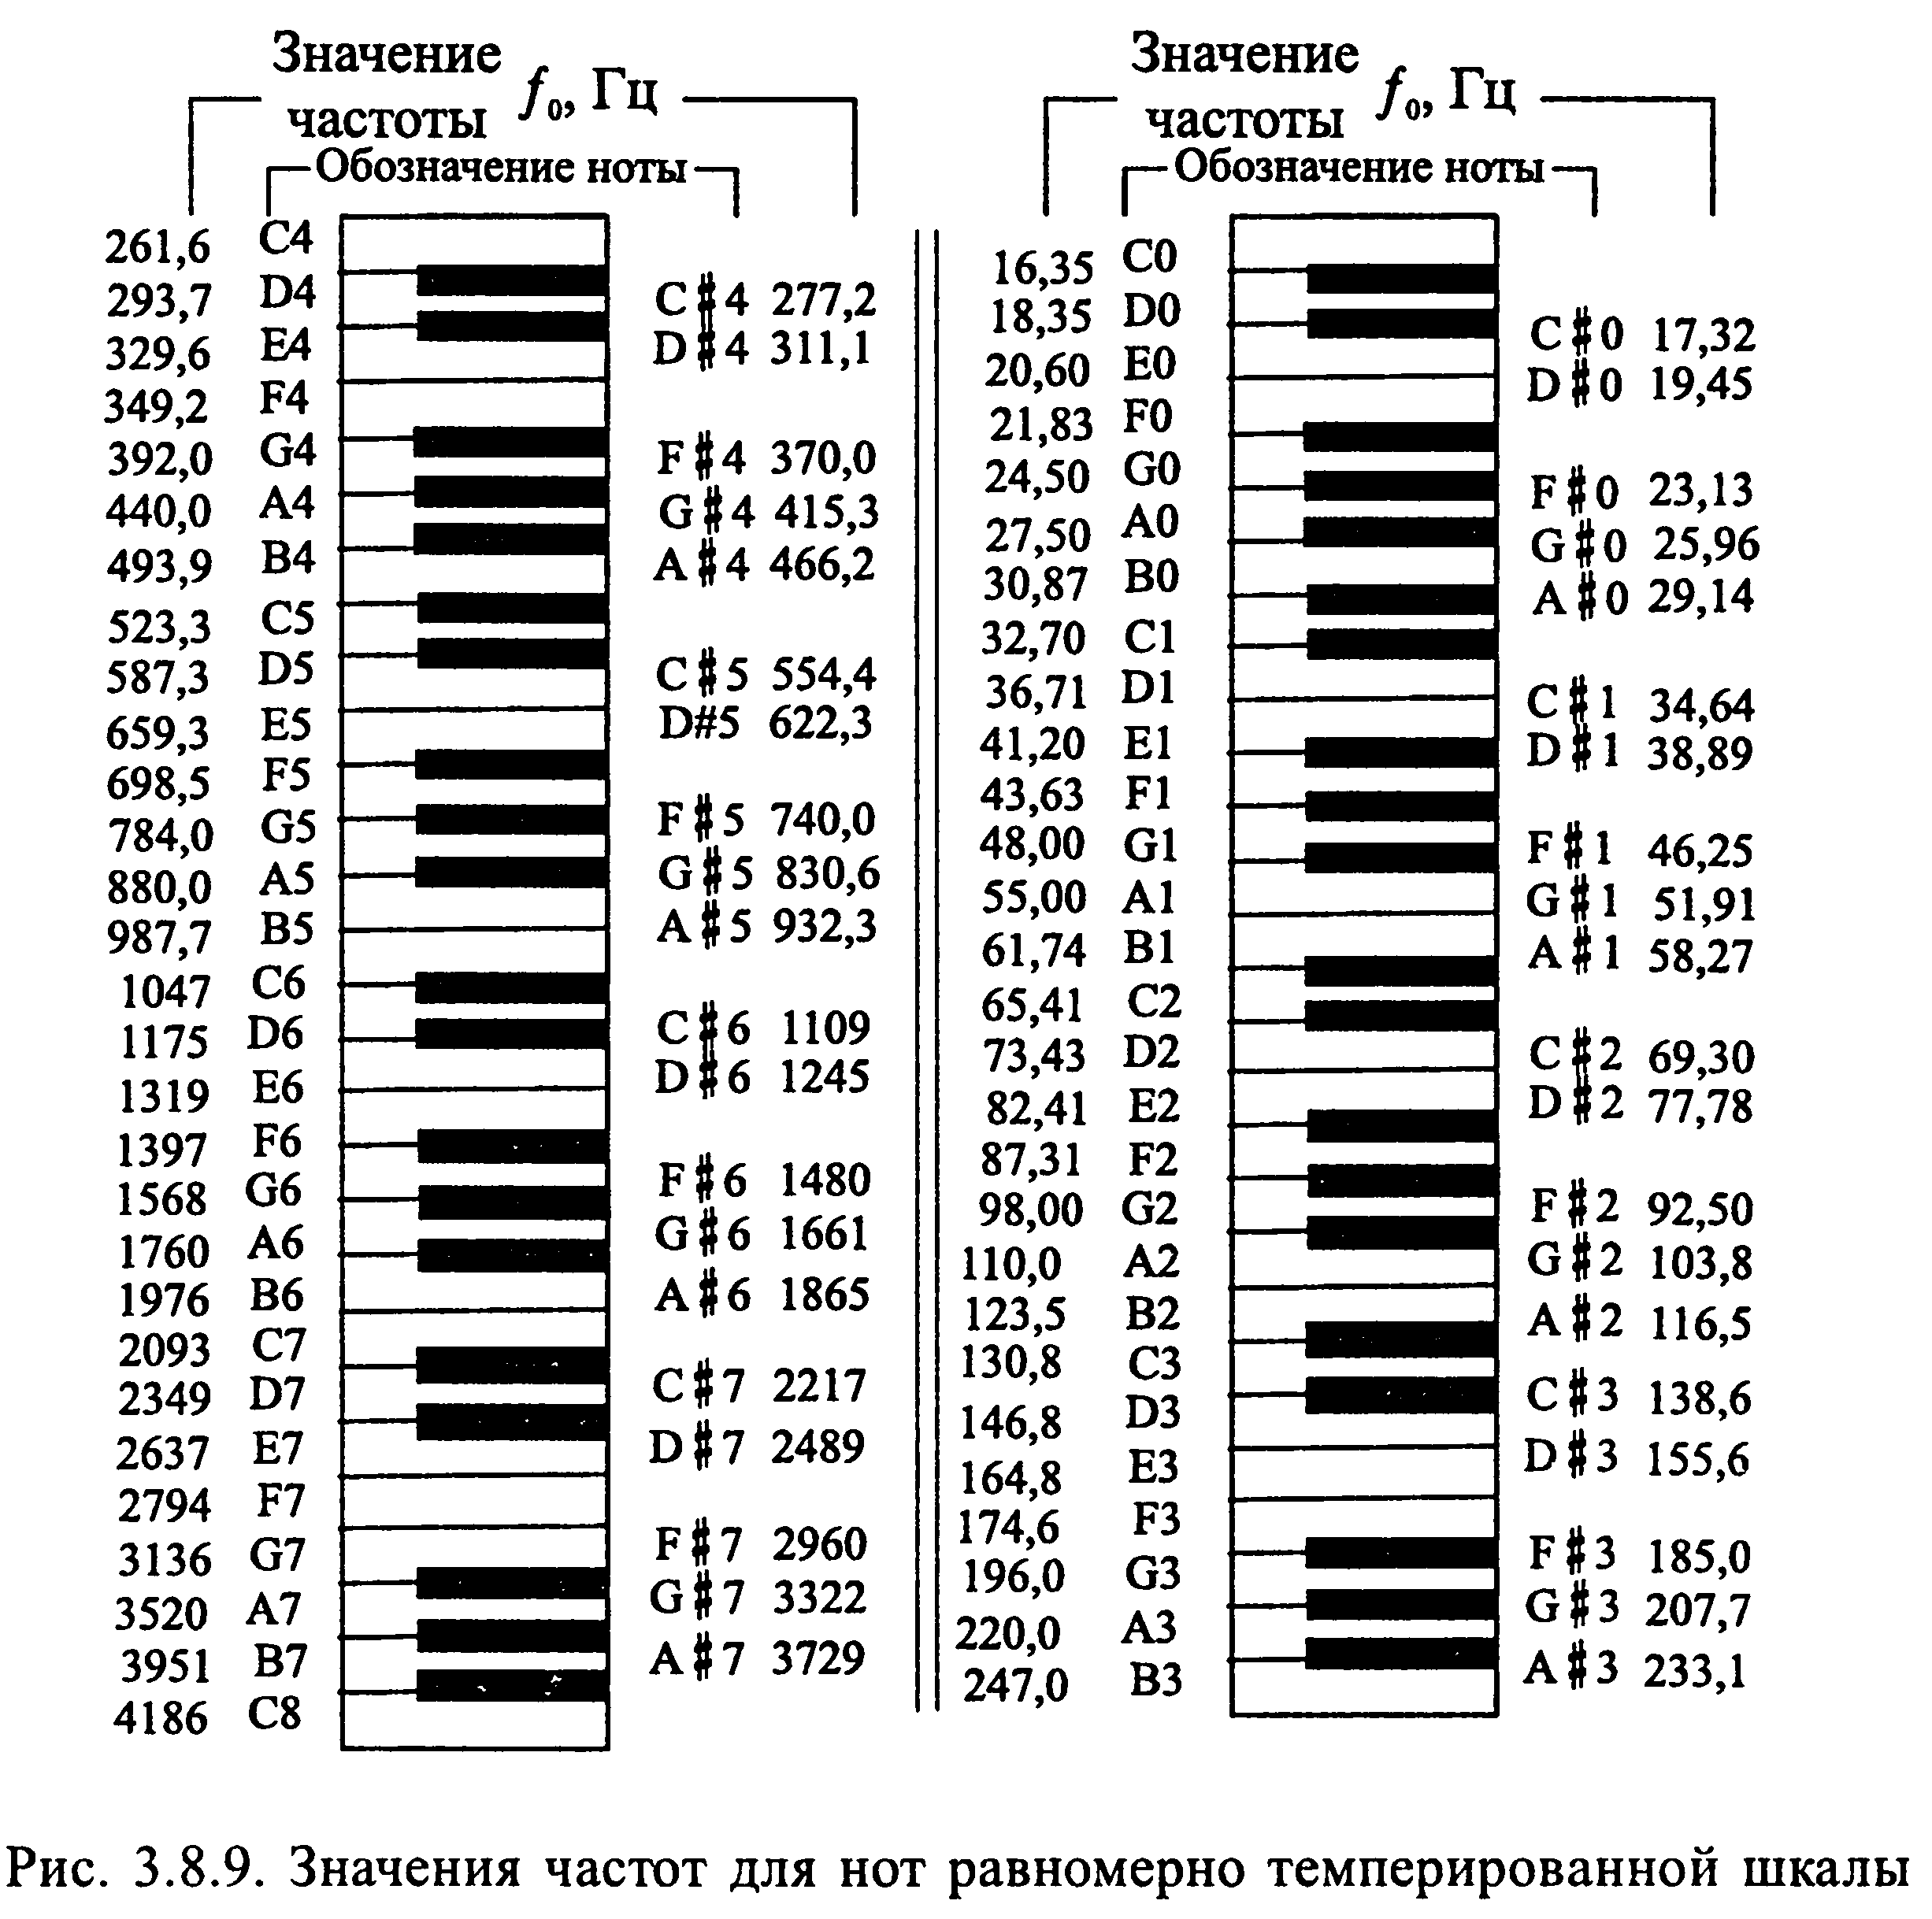 Ноты на английском языке. Частоты нот в Герцах пианино. Частоиынод фортепиано. Таблица частоты звуковых нот. Таблица частот нот фортепиано.